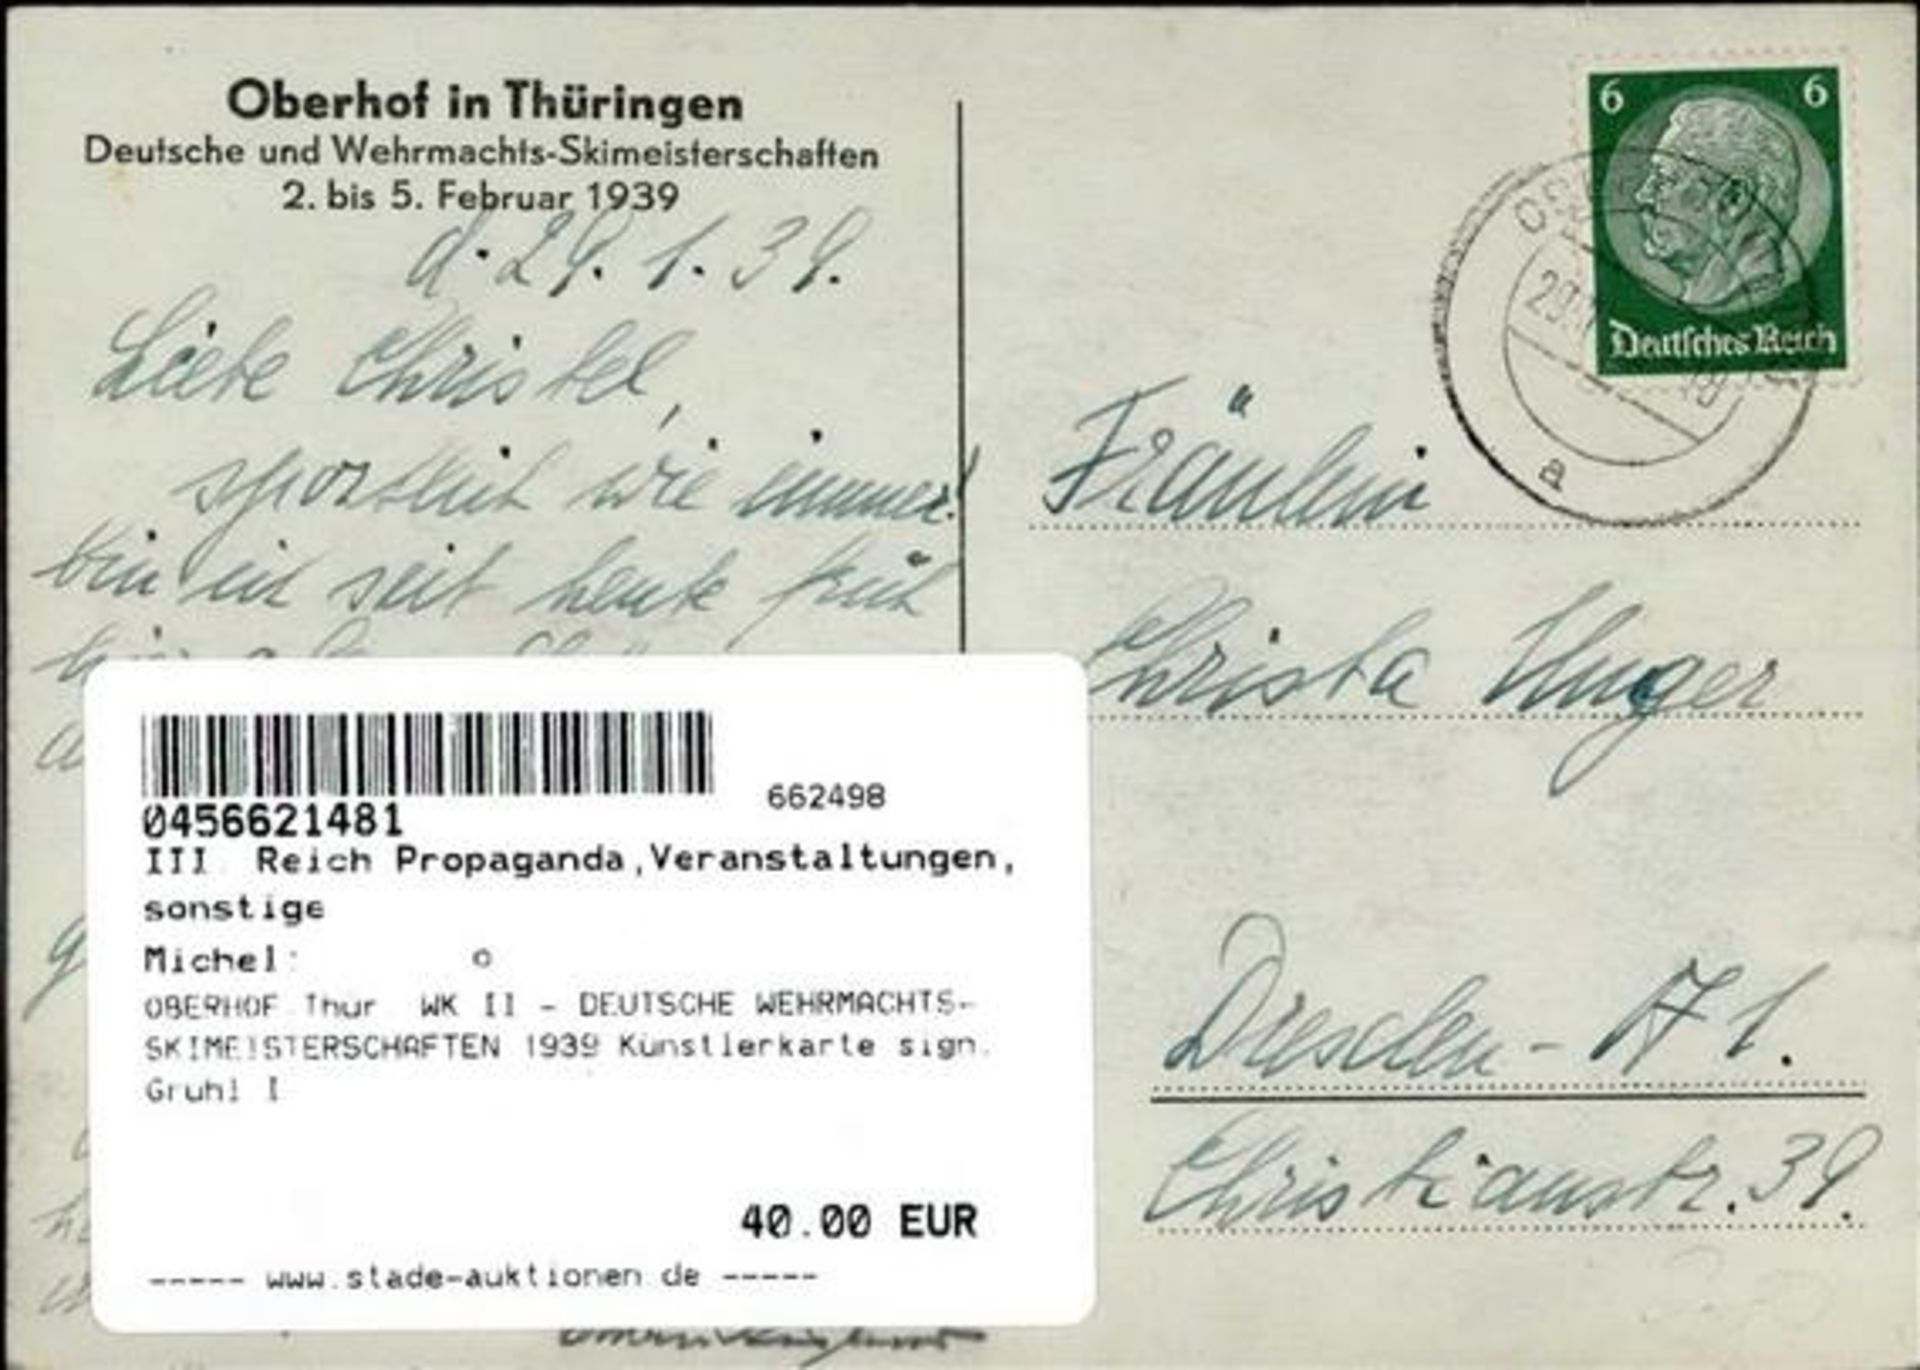 OBERHOF,Thür. WK II - DEUTSCHE WEHRMACHTS-SKIMEISTERSCHAFTEN 1939 Künstlerkarte sign. Gruhl I - Bild 2 aus 2